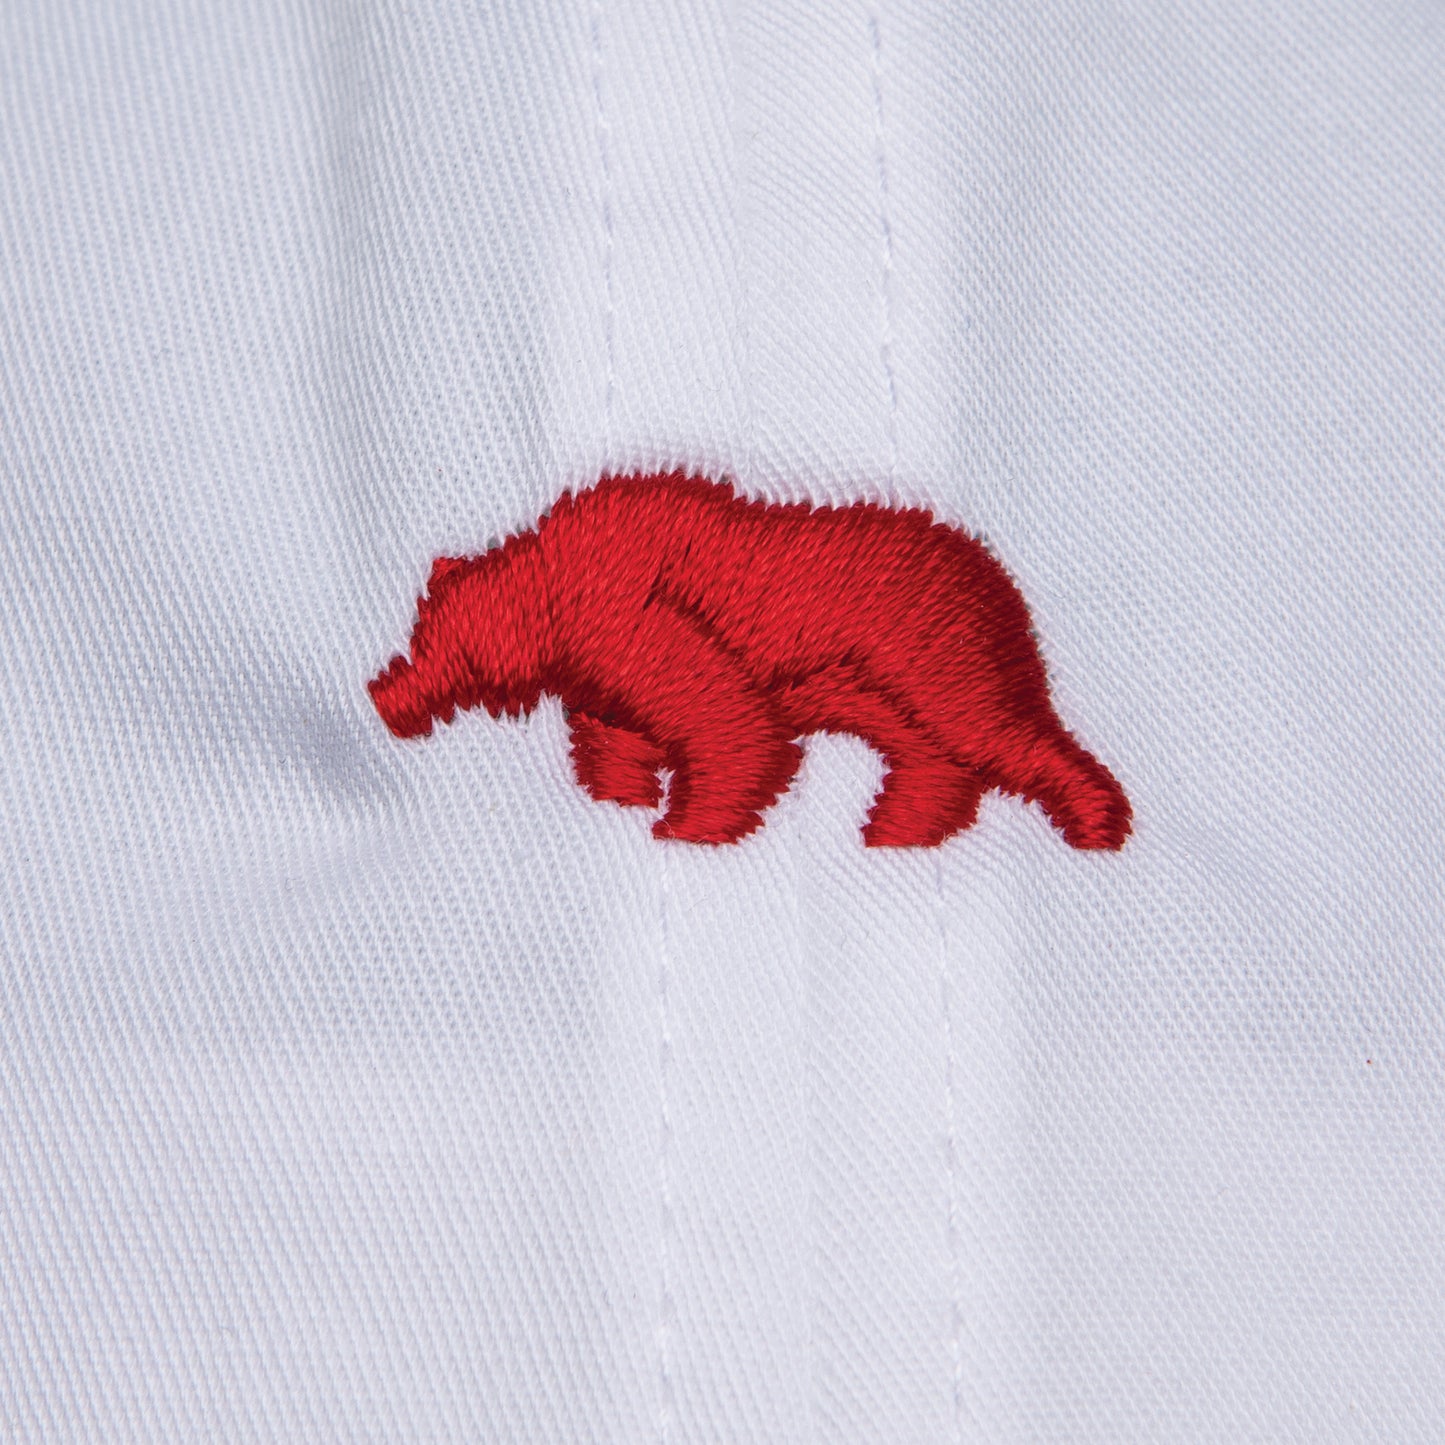 Bear Logo Cotton Hat